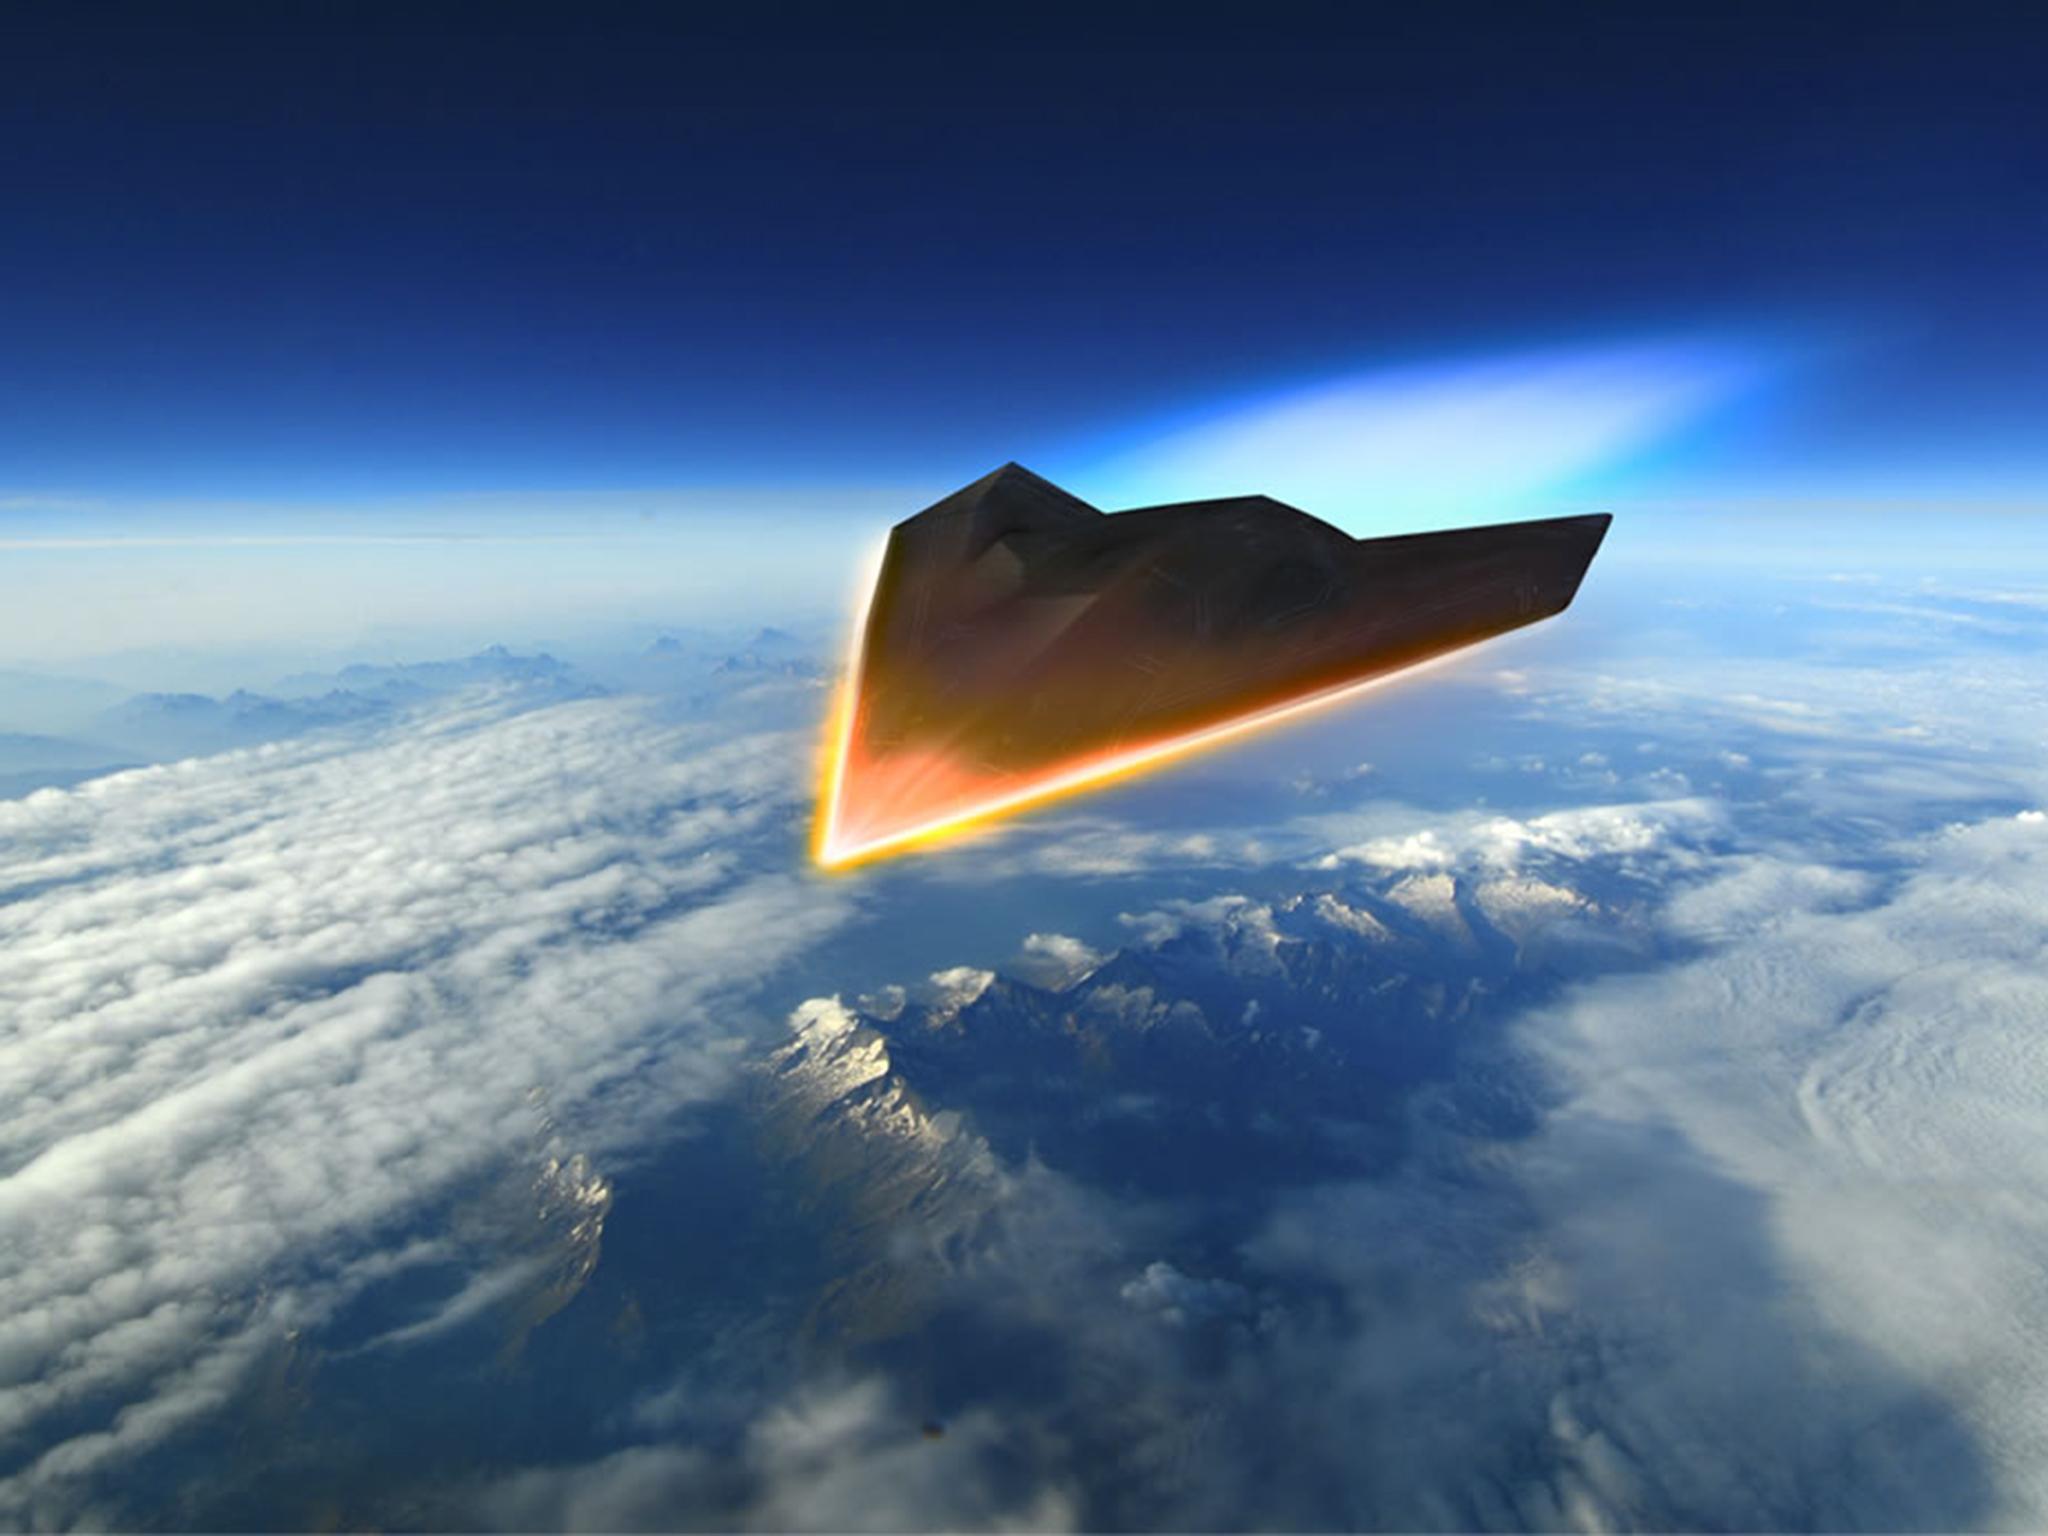 英国空军将研发新型高超音速战机,超过音速4倍